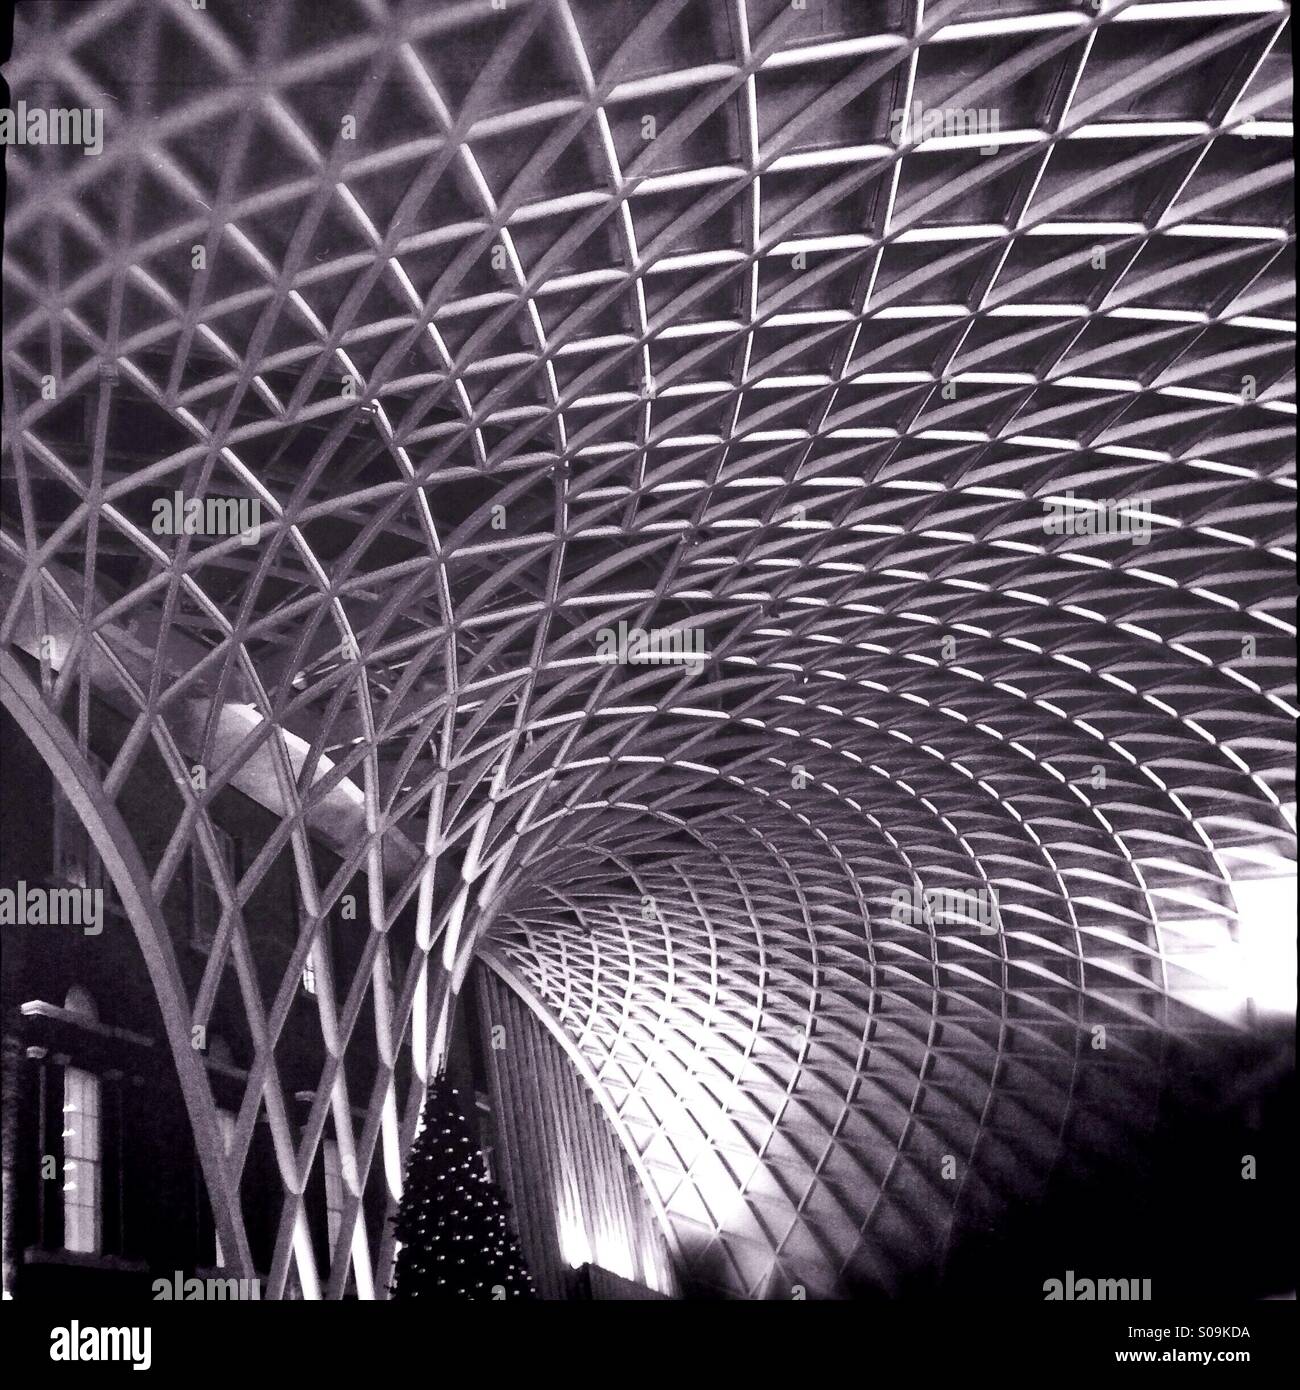 Metallstruktur des Daches der Kings Cross Station in London, England, UK, entworfen von den Architekten John McAslan und Partner. Stockfoto